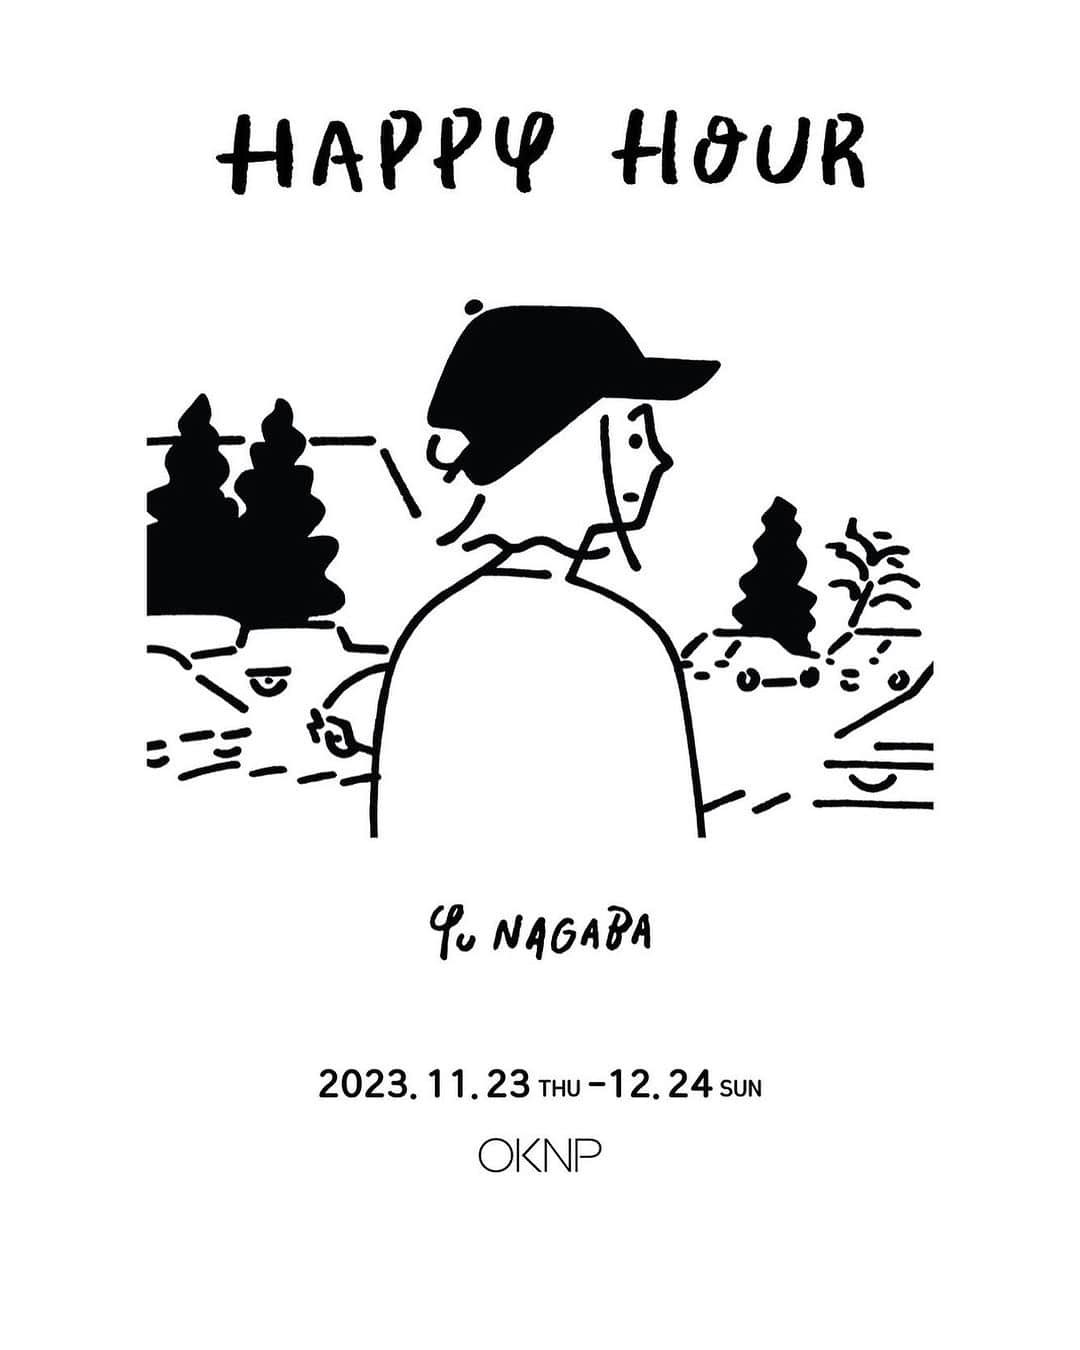 Yu Nagabaのインスタグラム：「初めて韓国で個展を開催します！楽しみです！ ーーーーーー Yu Nagaba - 《Happy Hour》  오케이앤피(OKNP, 부산)와 갤러리 타겟(Gallery Target, 도쿄)은 공동으로 11월 23일부터 12월 24일까지 절제된 표현으로 전세계인의 마음을 사로잡은 나가바 유(長場雄, Yu Nagaba, 1976~)의 한국 첫 공식 개인전 <Happy Hour>를 개최합니다. 이번 전시는 그의 한국 첫 공식 개인전인만큼, 전시를 위해 새롭게 준비한 신작 80여점(캔버스 회화 30여점, 드로잉 50여점)이 발표되며, 이 외에 그가 함께 작업한 모자, 가방 등 다양한 아트상품도 함께 만나보실 수 있습니다.  ■전시명: Yu Nagaba - 《Happy Hour》 ■전시기간: 2023.11.23(목) - 12.24(일) 10:00 ~ 18:00 ■전시장소: 오케이앤피 부산 (부산 해운대구 해운대해변로 292, 그랜드조선부산 4층) ■전시문의: 051-744-6253  OKNP Busan and Gallery Target Tokyo together hold the first solo exhibition in Korea, "Happy Hour" of Yu Nagaba (1976~), who captivated people's hearts around the world with artwork understated depiction from Nov. 23 to Dec. 24. As this exhibition is his first official solo exhibition in Korea, more than 100 artworks that he newly created for this exhibition (26 canvas paintings and 80 drawings) are presented, and various art goods such as hats and bags that he worked with are presented to welcome visitors.  ■Title: Yu Nagaba - 《Happy Hour》 ■2023.11.23(THU) - 12.24(SUN) 10:00 ~ 18:00 ■Location: OKNP BUSAN (4F, Grand Josun Busan, 292, Haeundaehaebyeon-ro, Haeundae-gu, Busan) ■+82 51-744-6253  @oknp.busan Thank you🙏 @gallery_target」